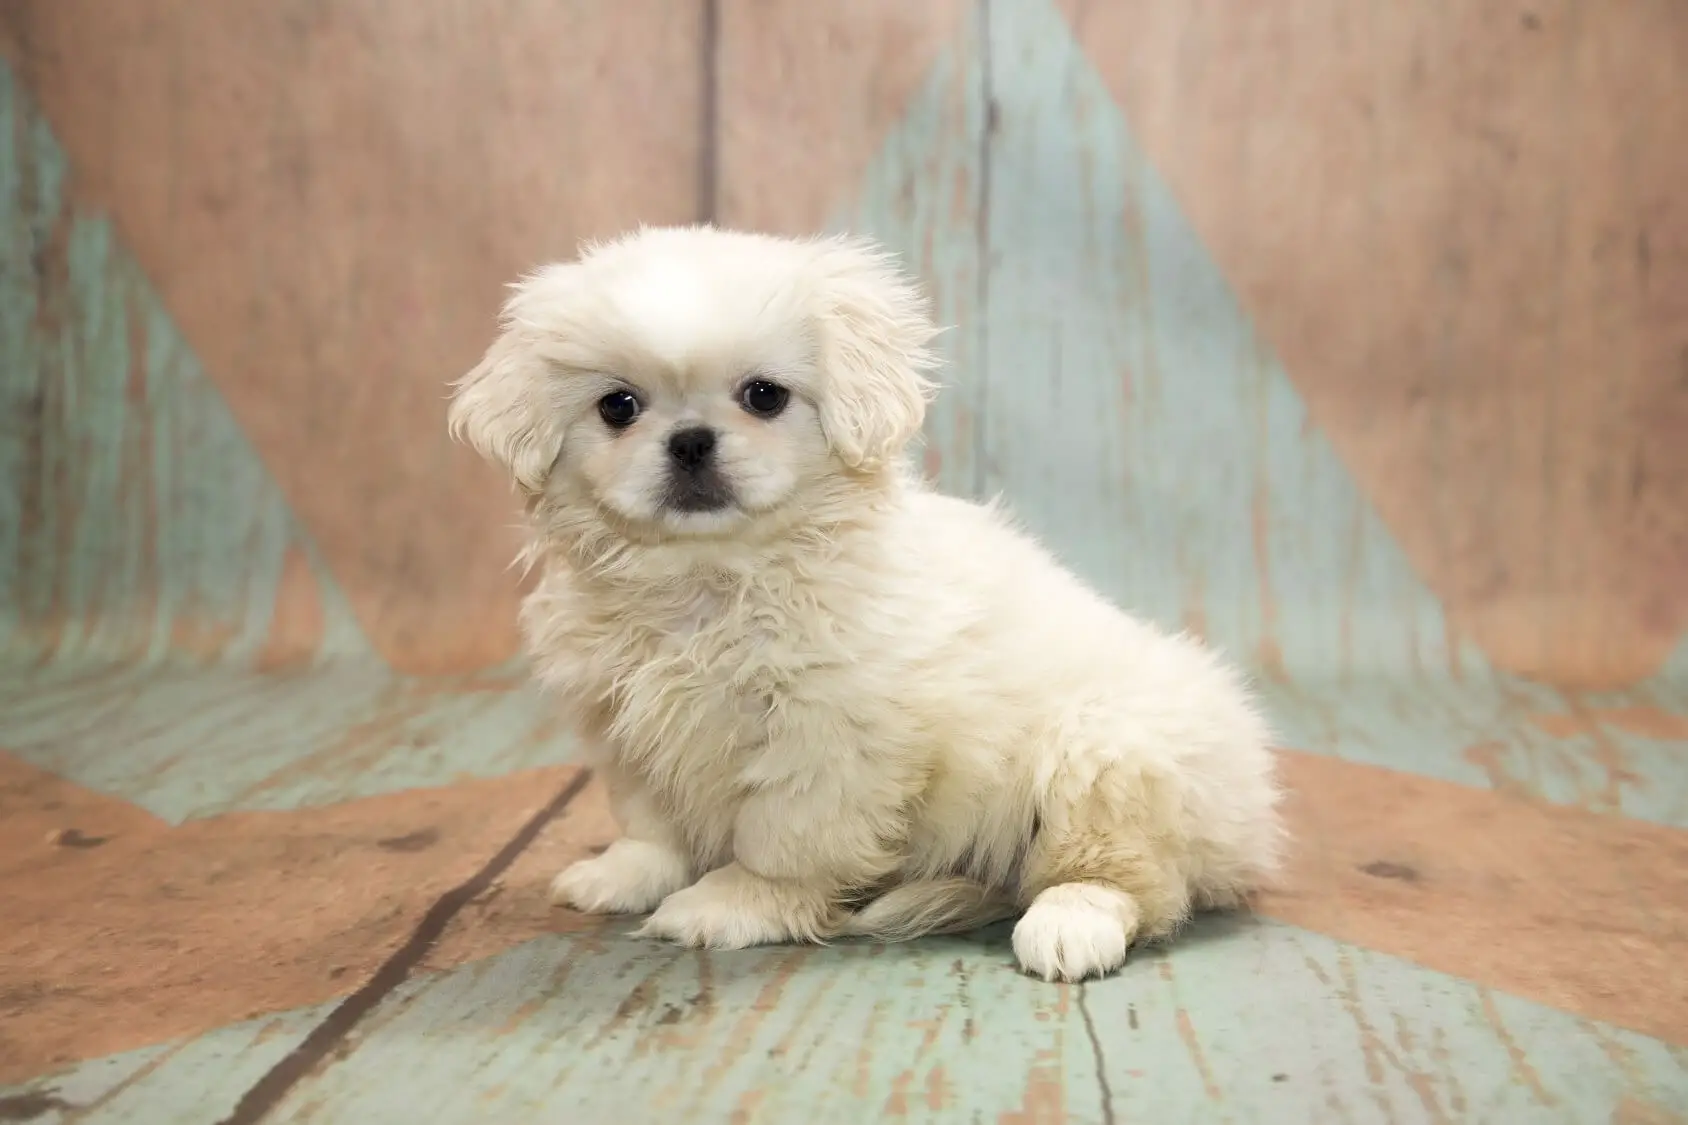 Pekingese Poodle Mix - Perfect Dog Breeds